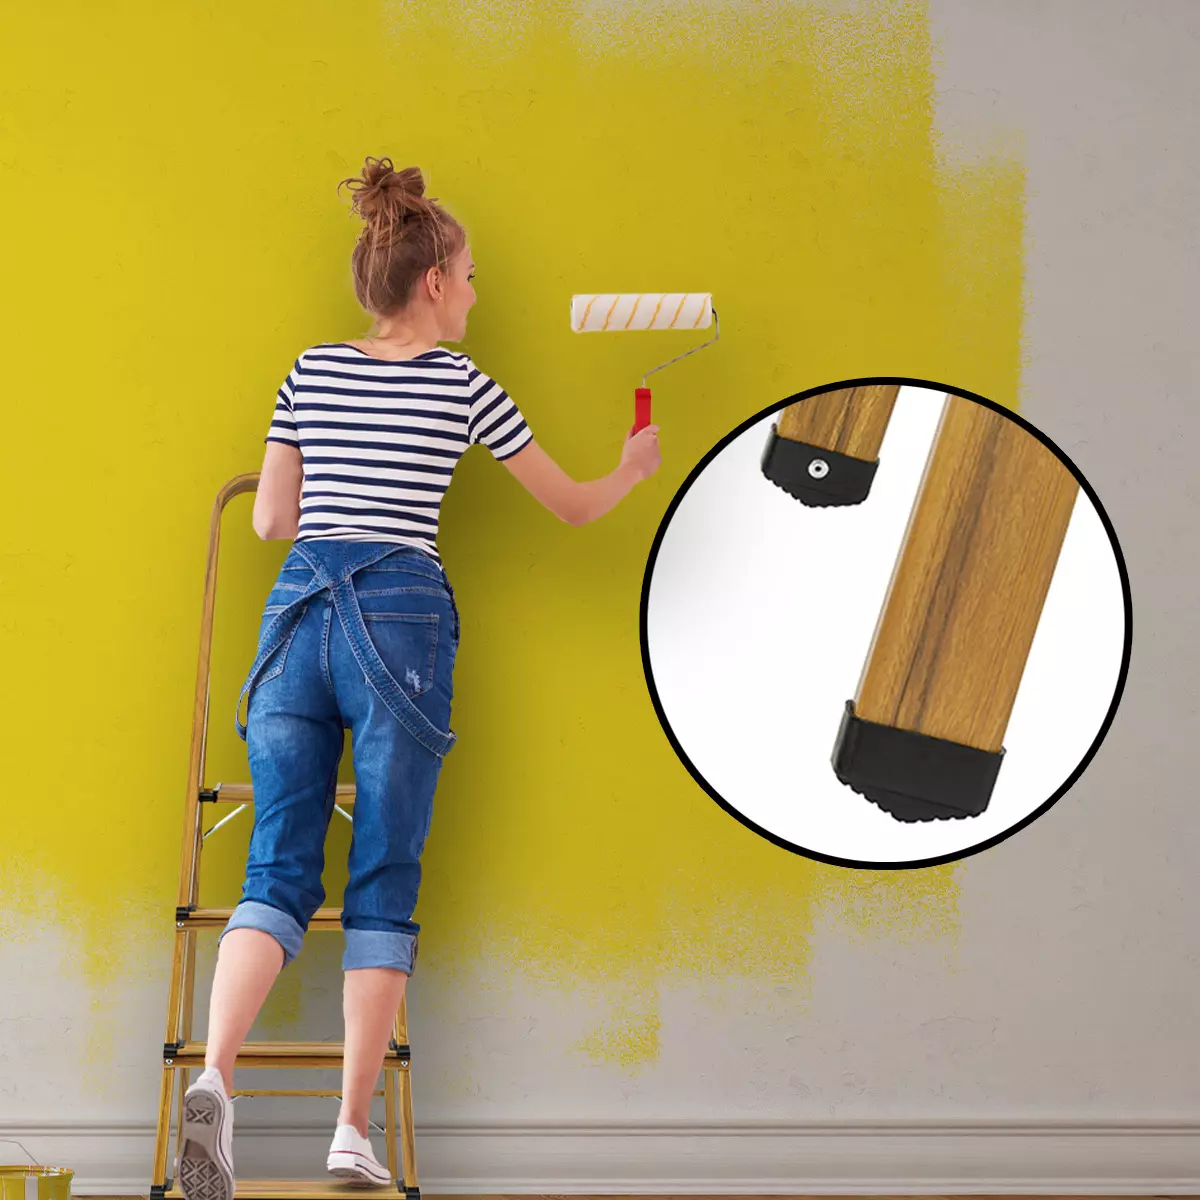 Auf Leiter stehende Frau streicht weiße Wand in Gelb